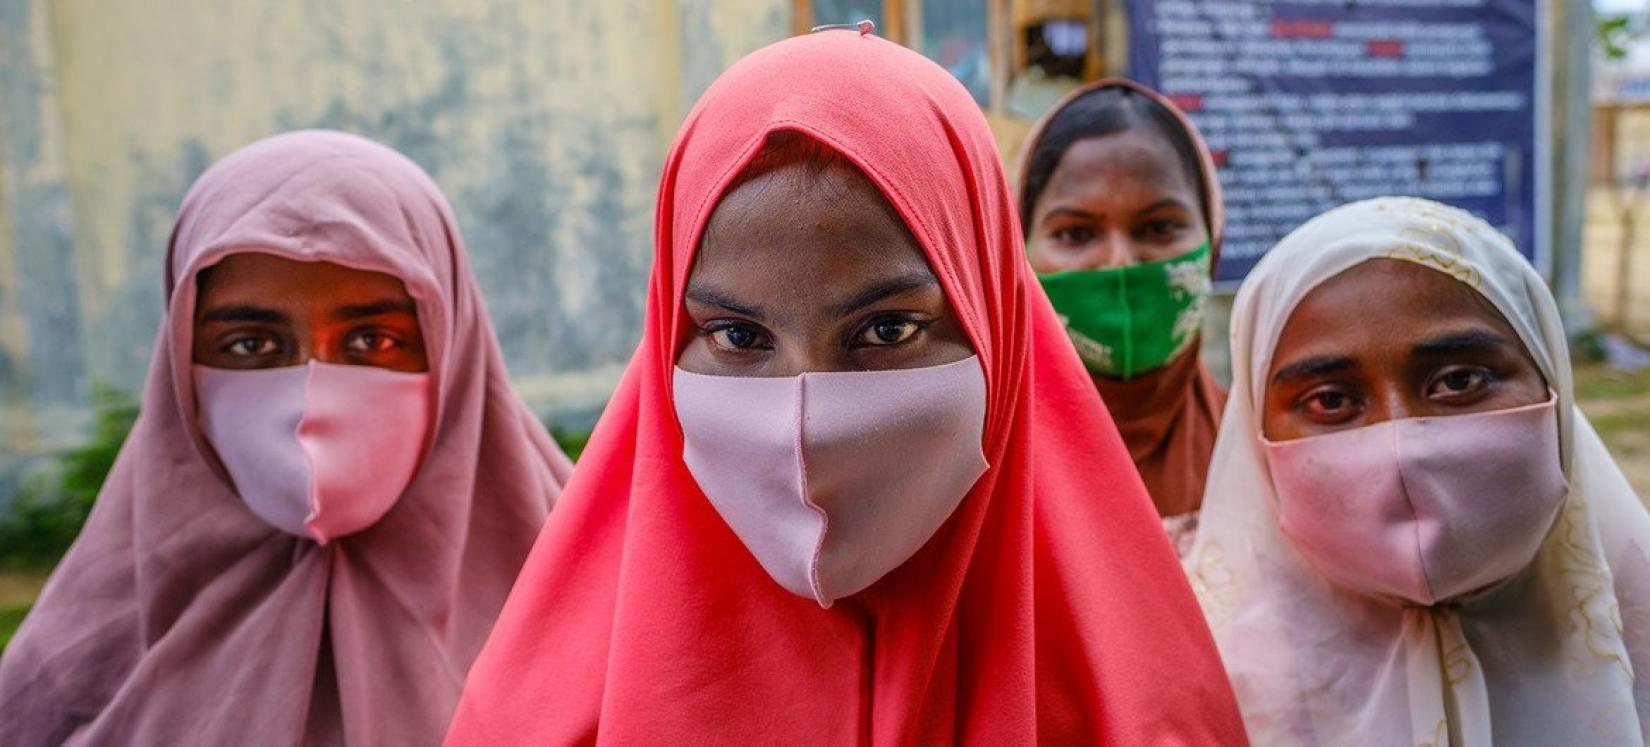 Mulheres rohingya recém-chegadas na província de Aceh, na Indonésia, após passarem sete meses no mar.